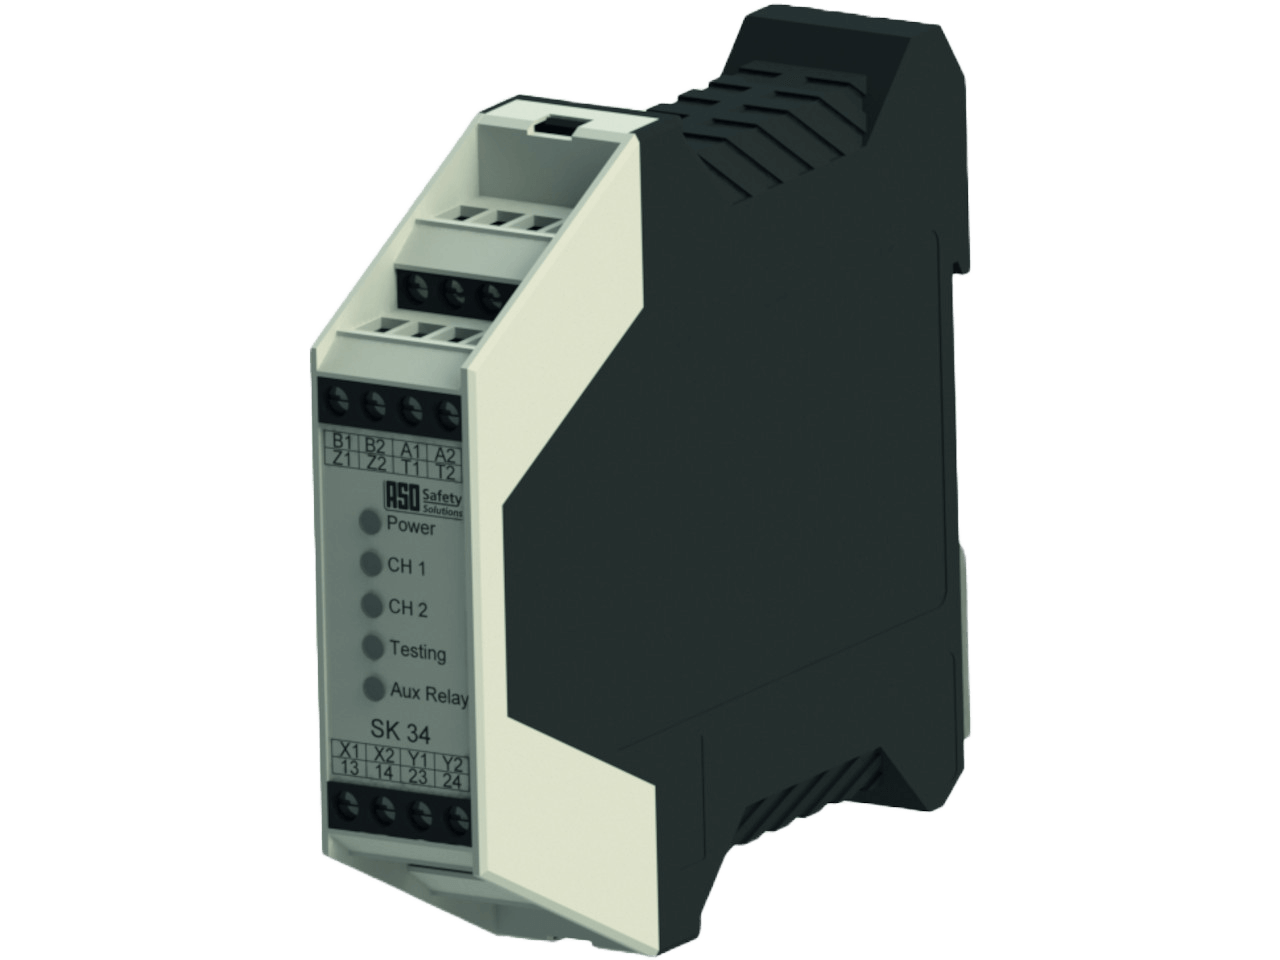 ASO Safety ELMON relay 34-32 Sicherheitsschaltgerät